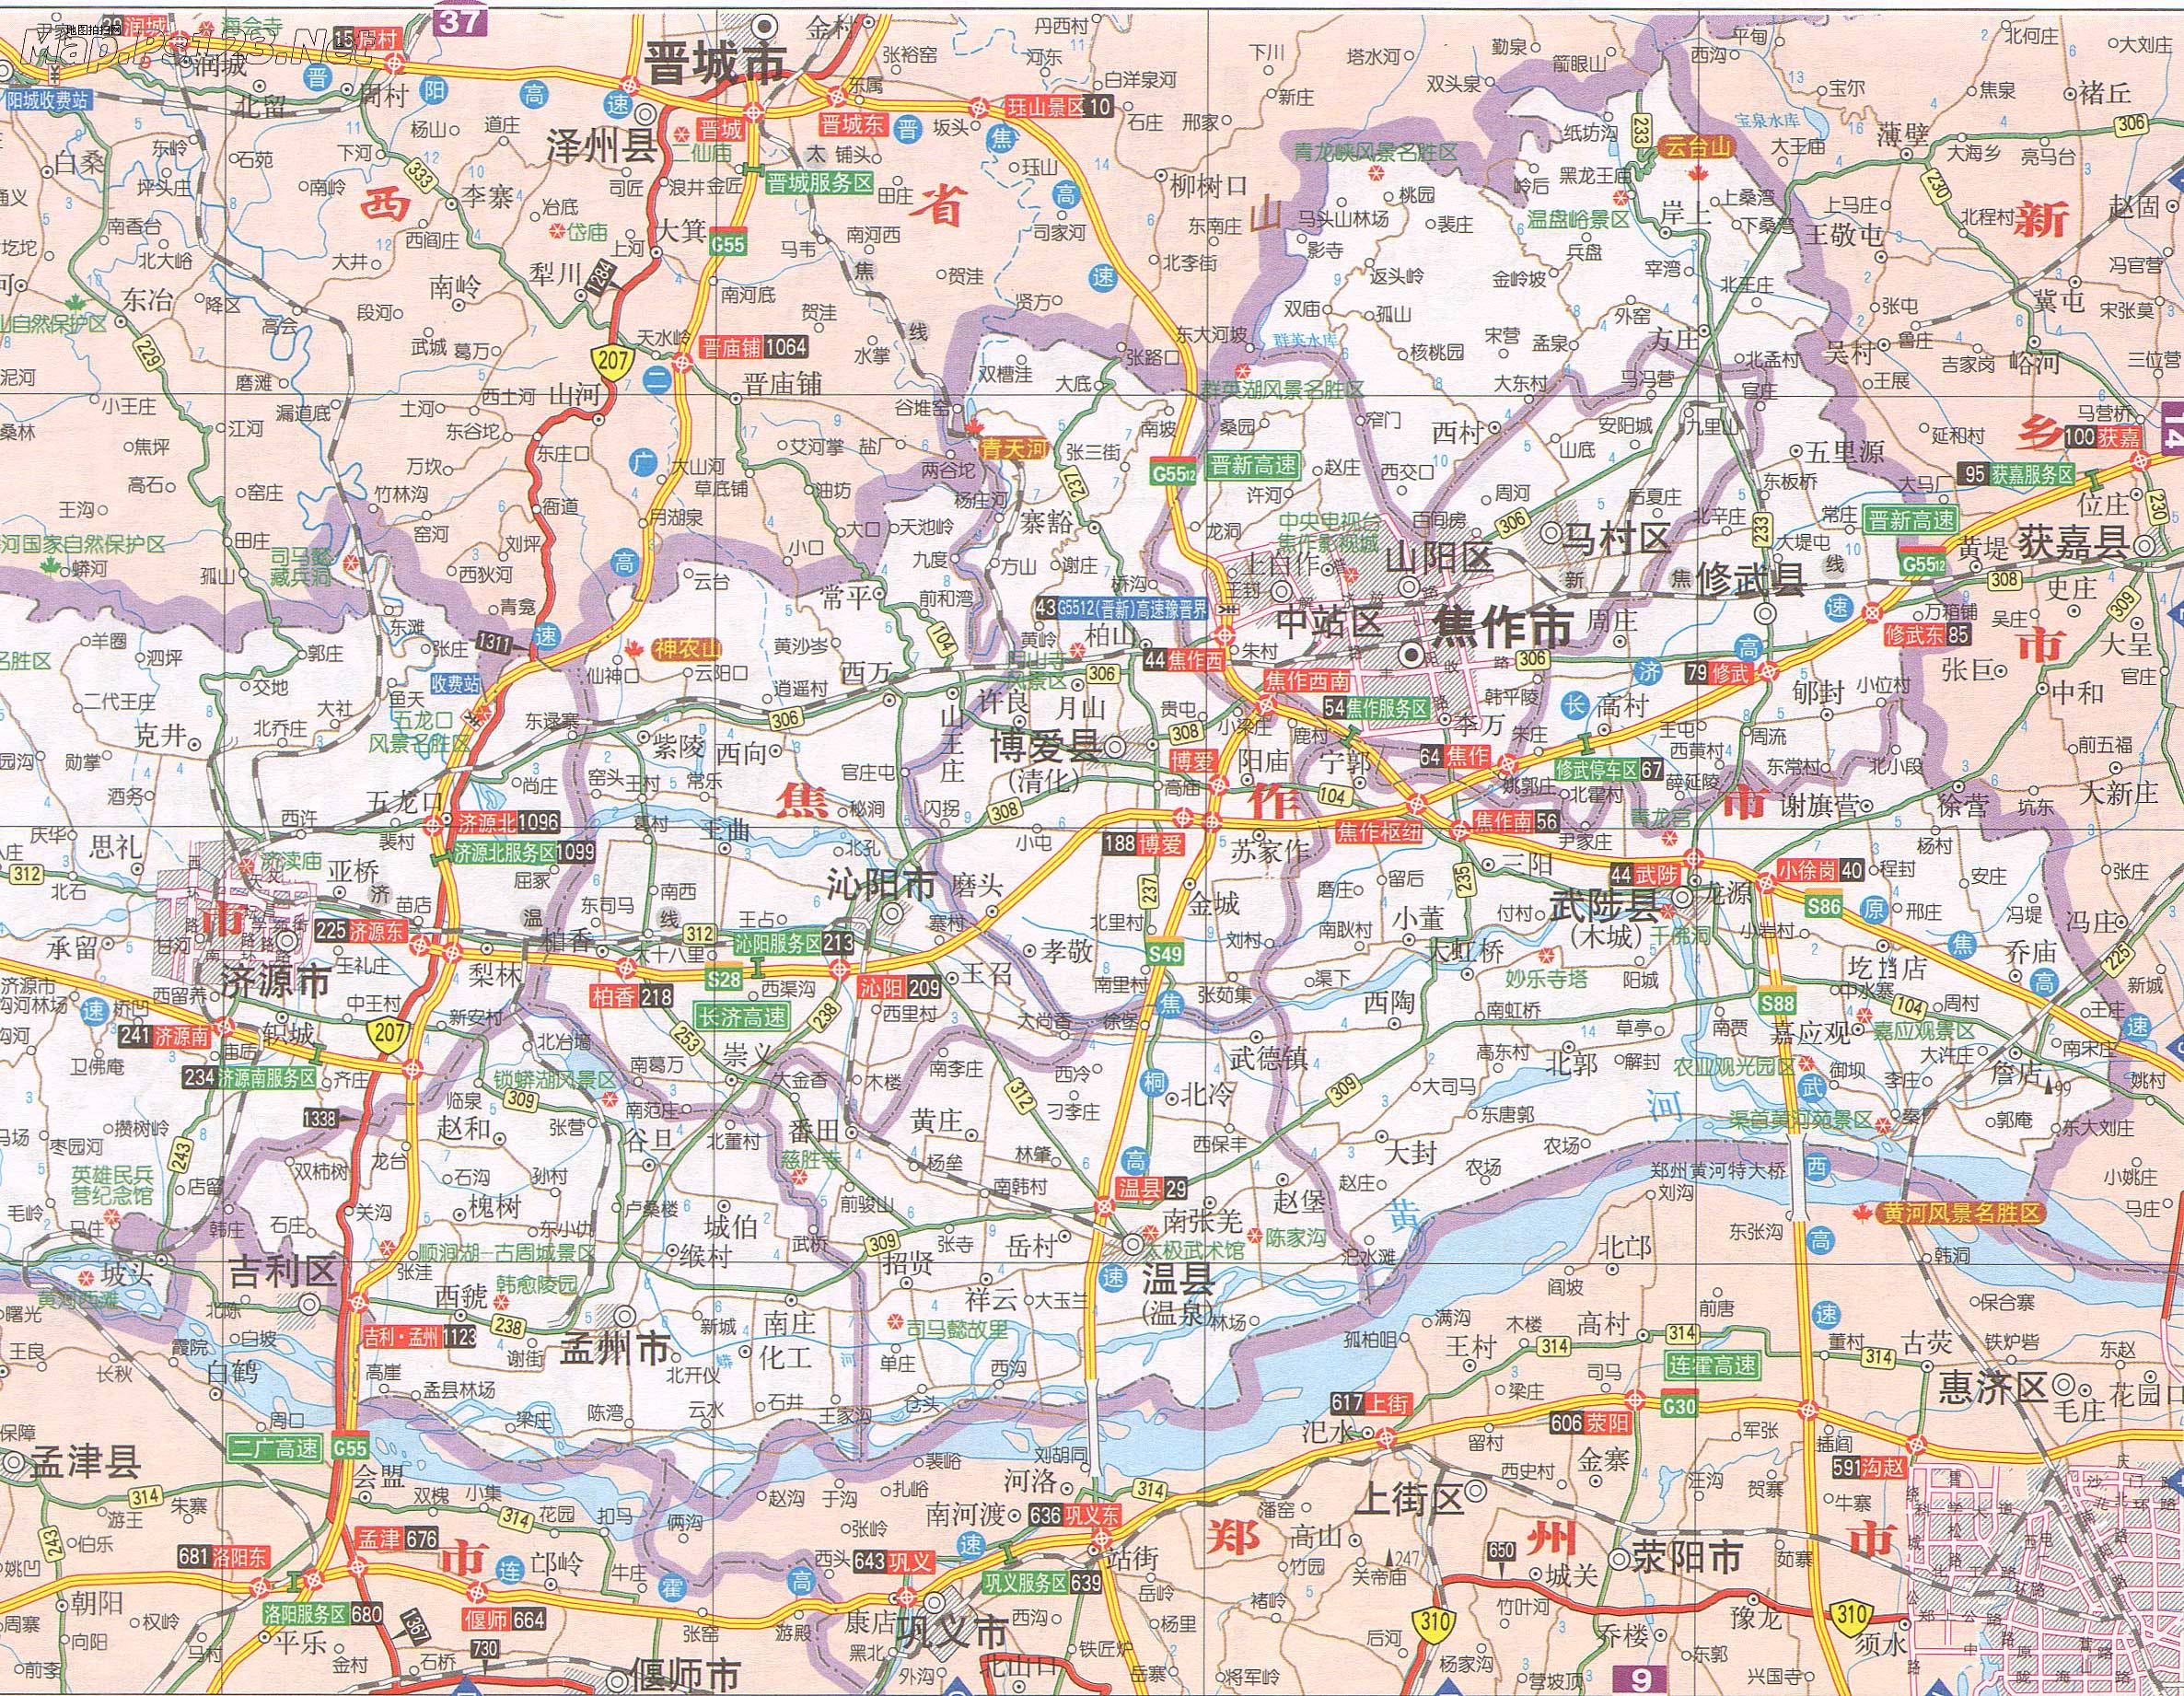 濮阳市 上一幅地图: 没有了 | 焦作市 | 下一幅地图: 焦作市区地图